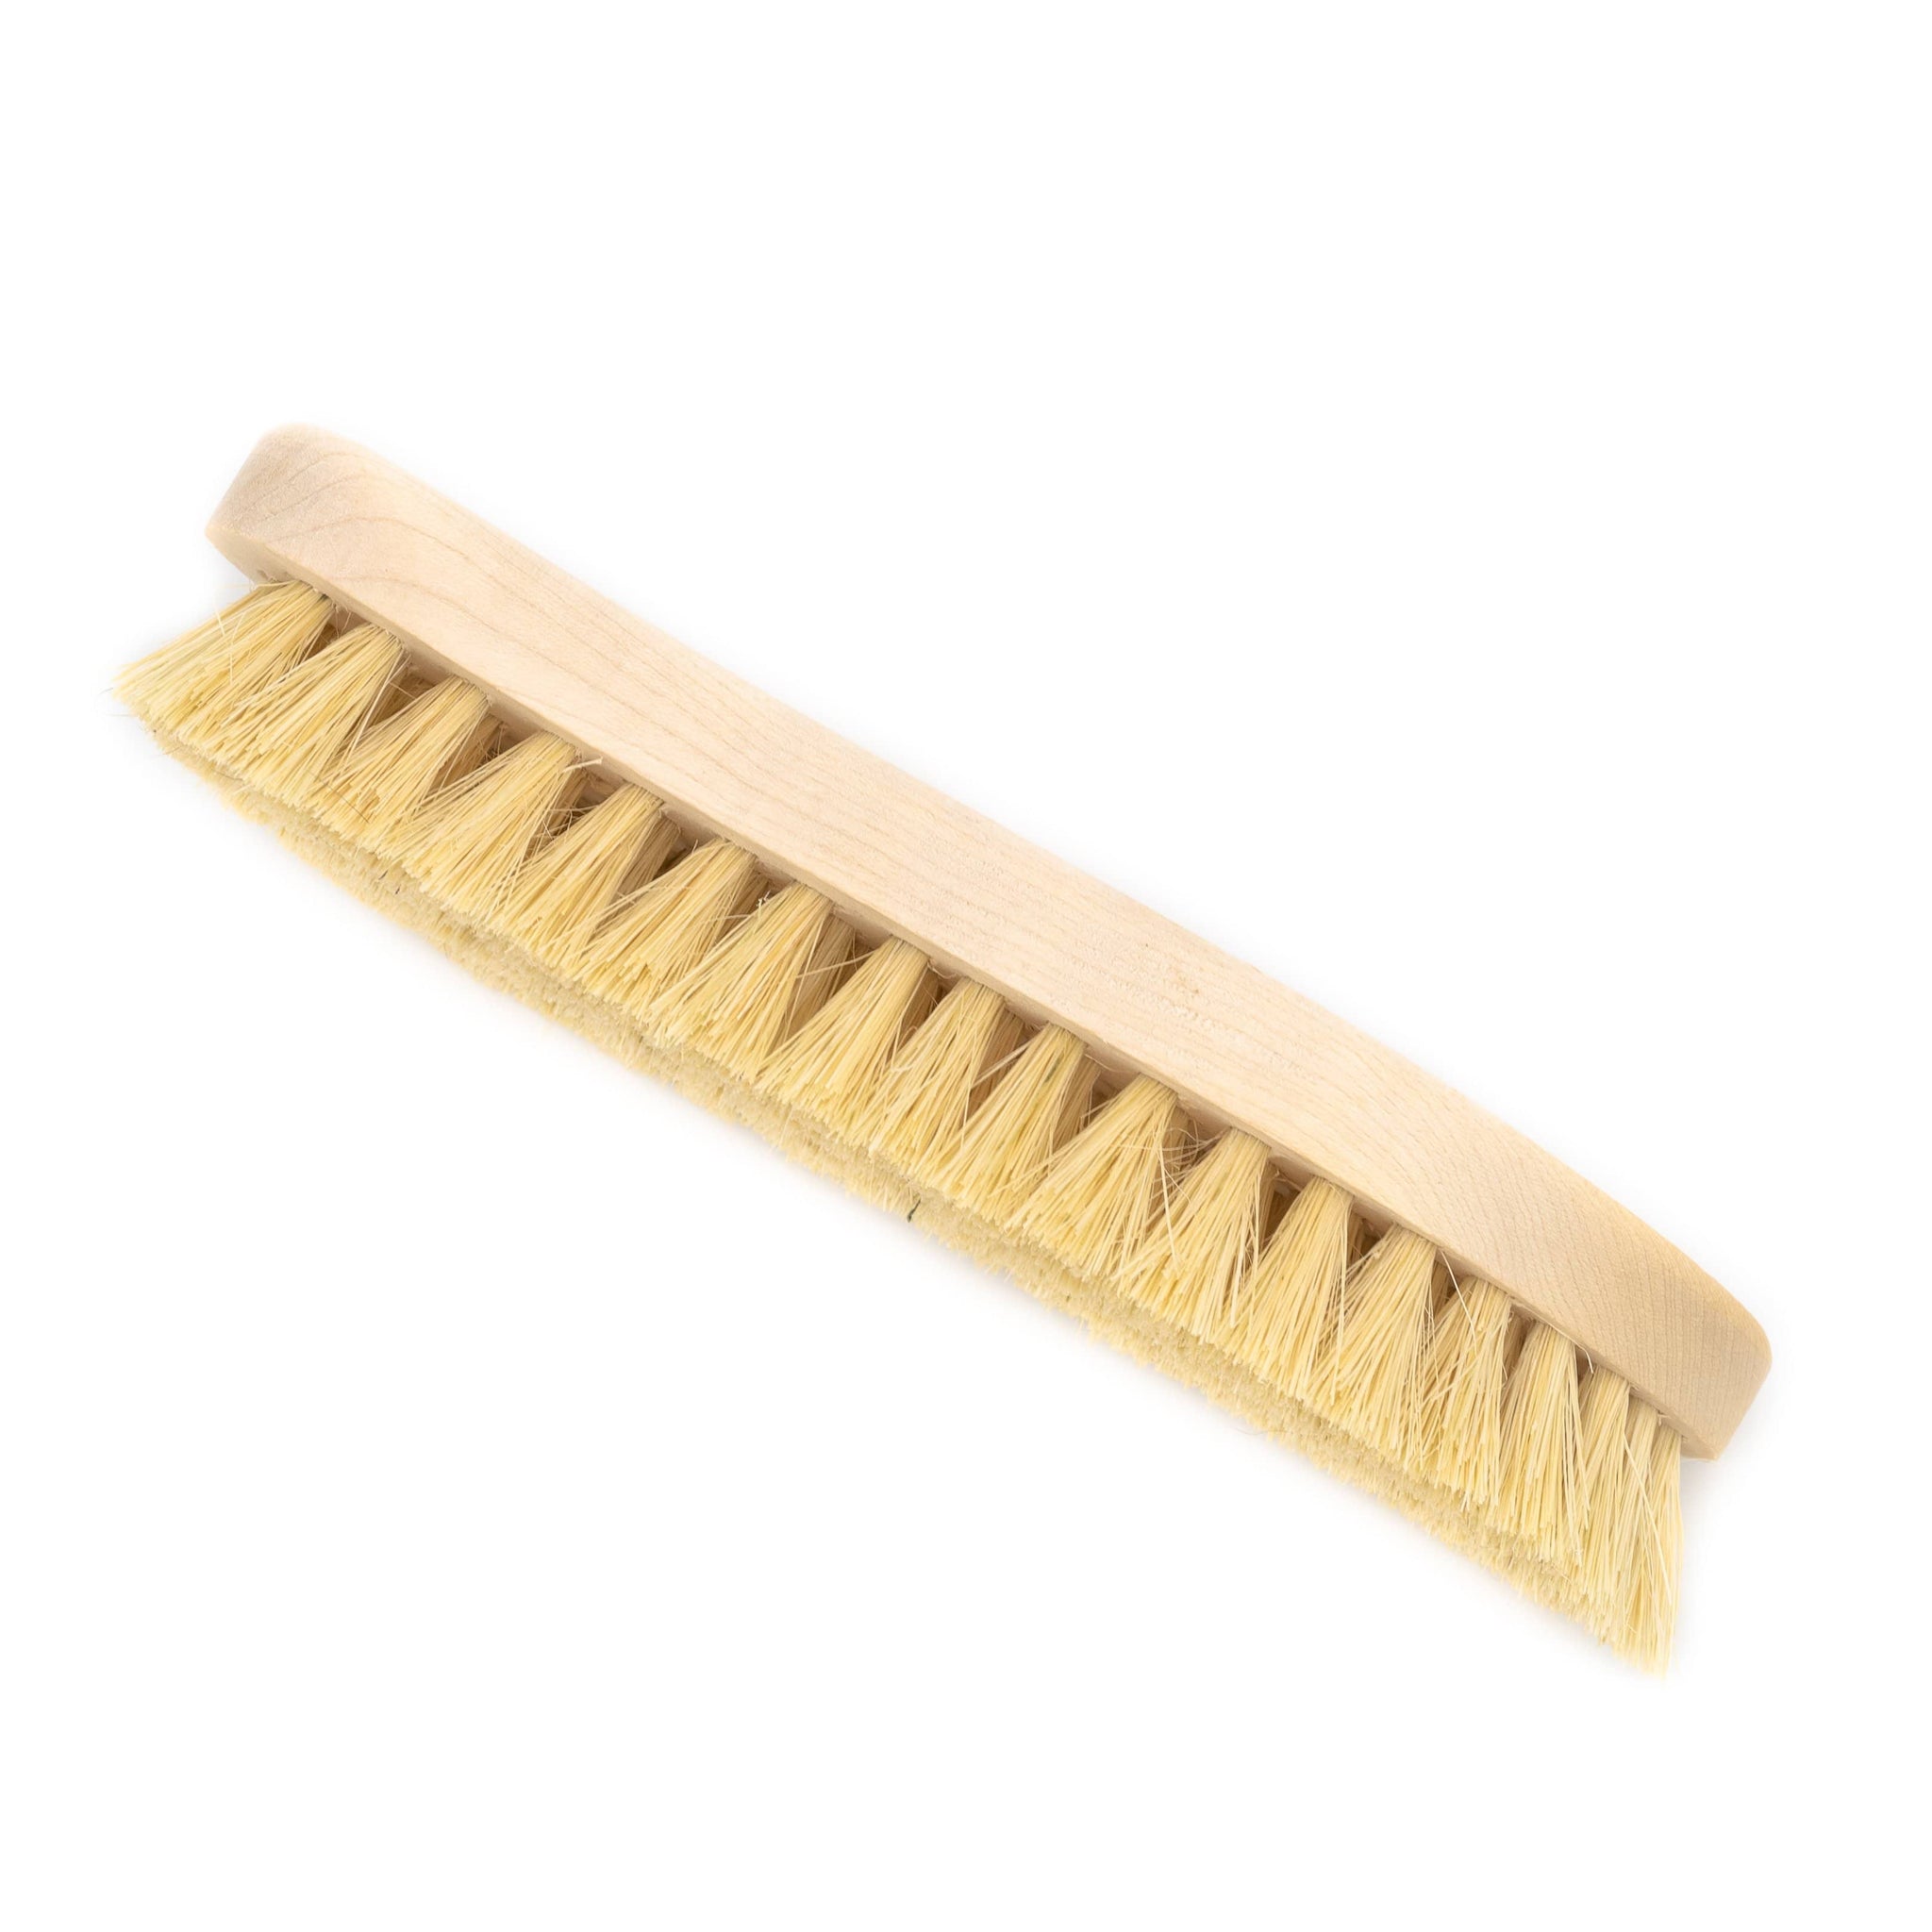 Super Scrubbing Brush with Tampico Bristles (FSC 100%) - Clearstone